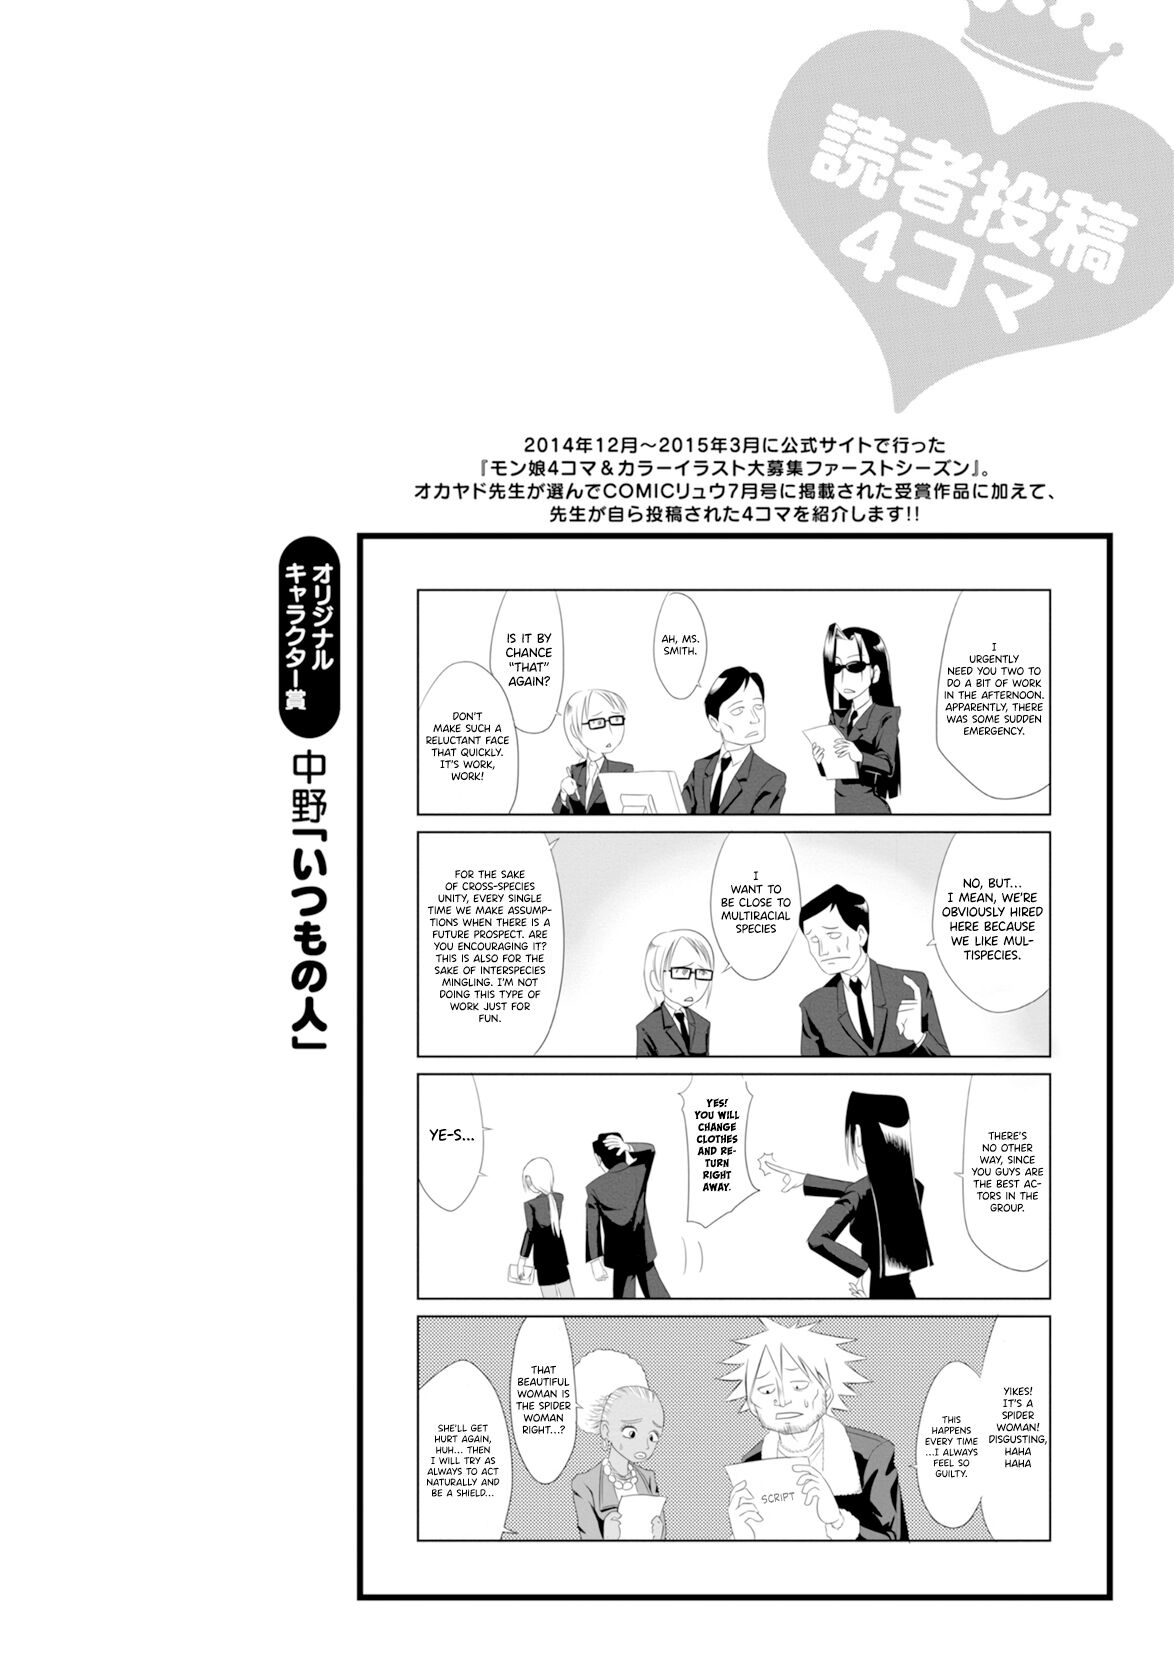 Monster Musume no Iru Nichijou - 4-koma Anthology Chapter 1 - HolyManga.net